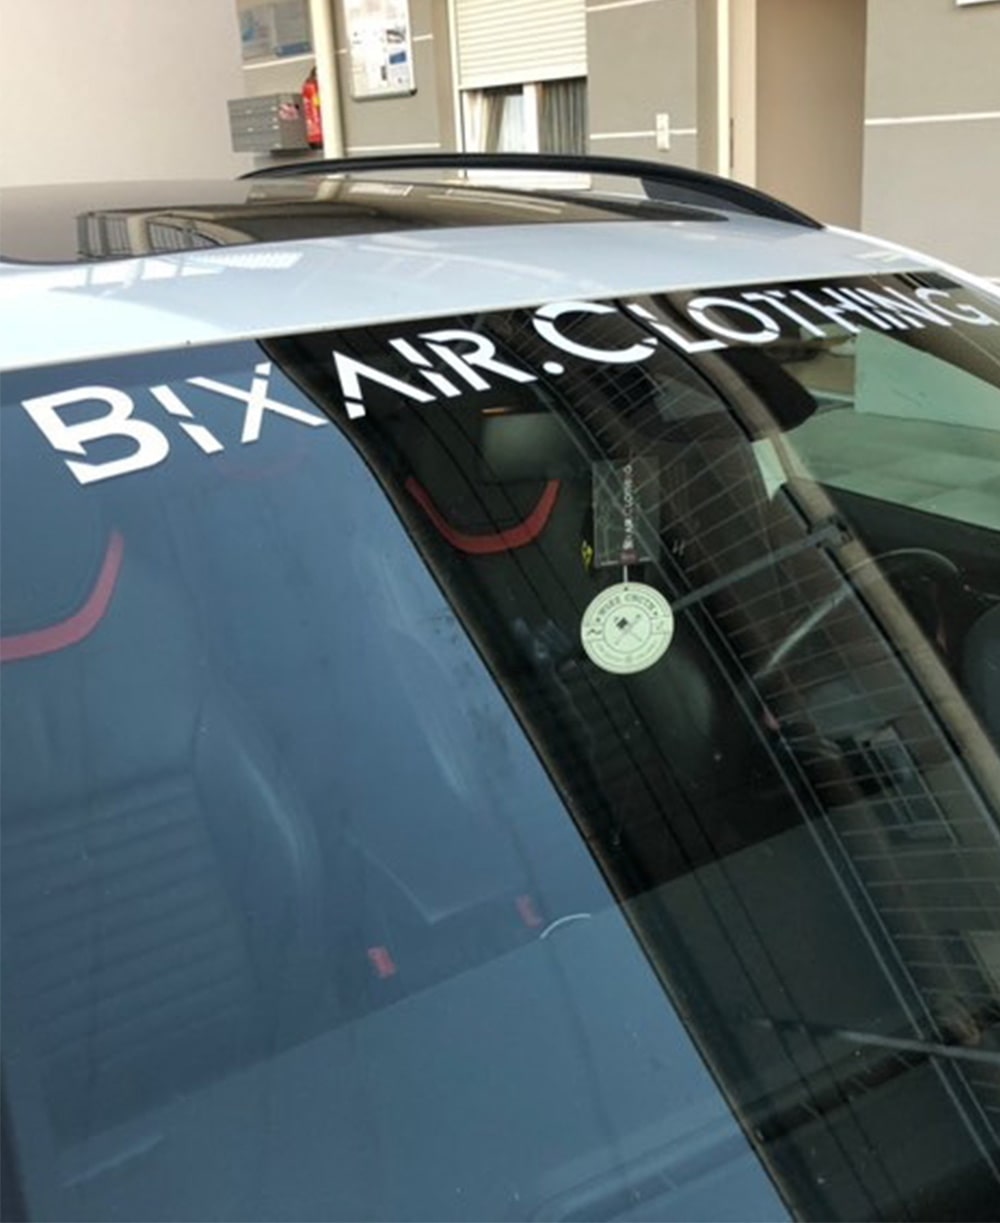 Windschutzscheiben Sticker – Bixair Clothing